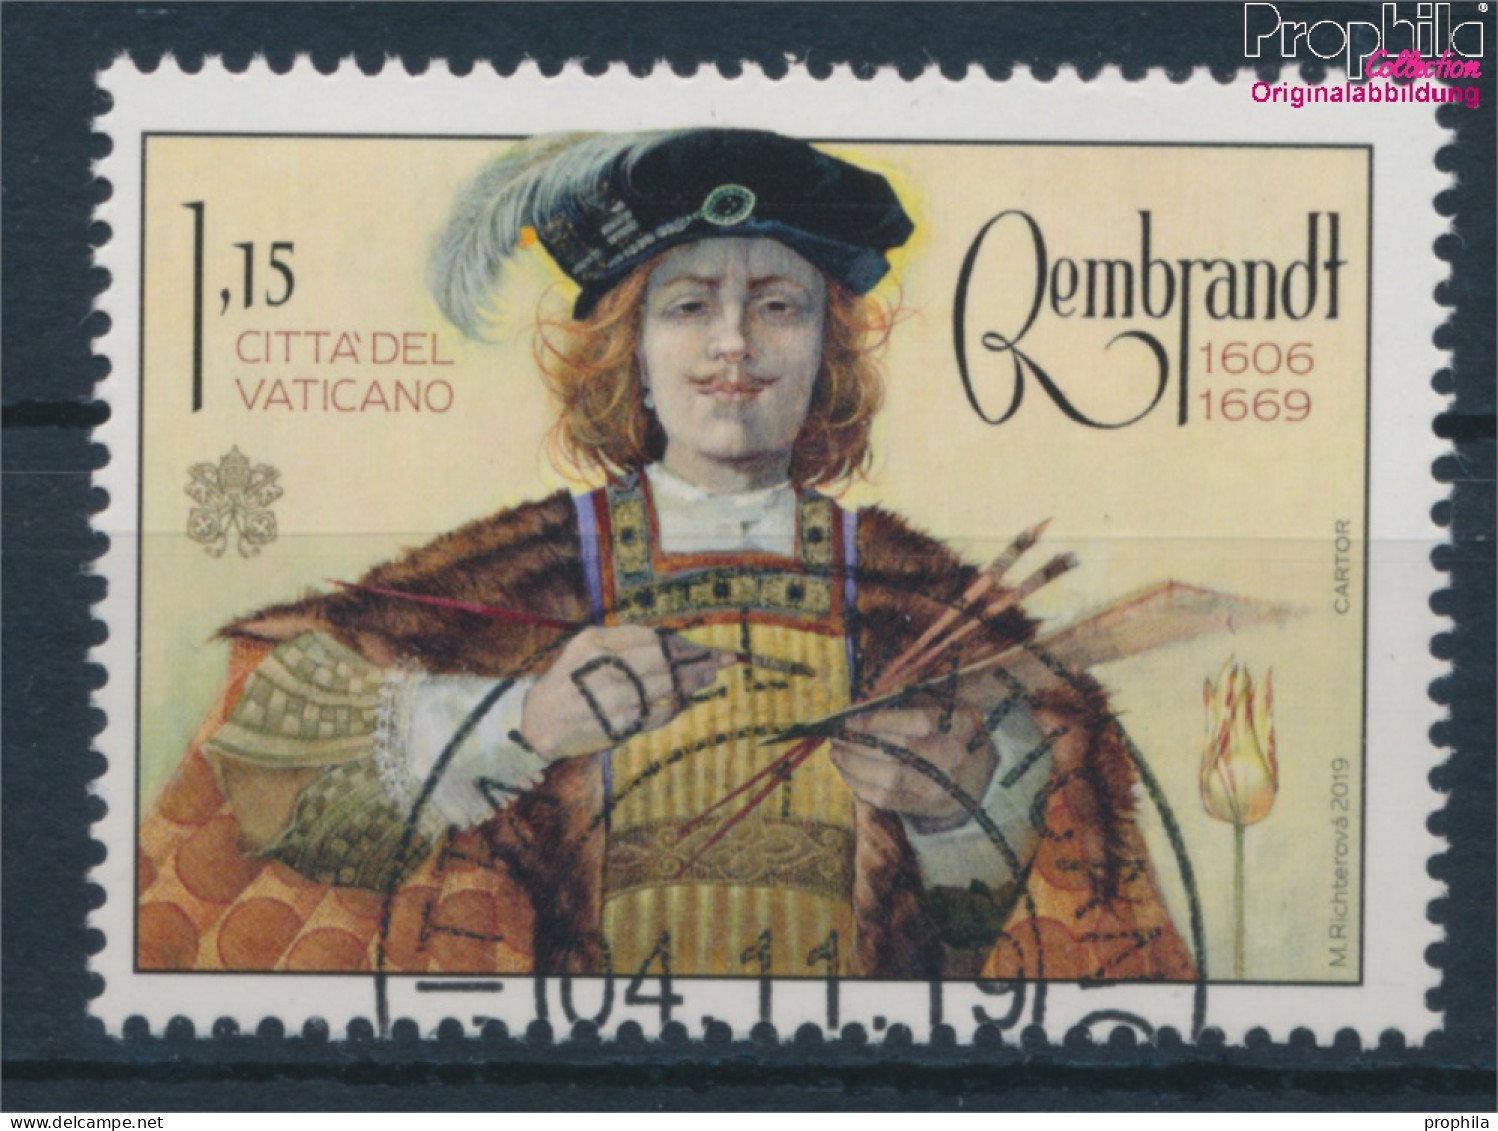 Vatikanstadt 1982A (kompl.Ausg.) Gestempelt 2019 Rembrandt Van Rijn (10405908 - Oblitérés